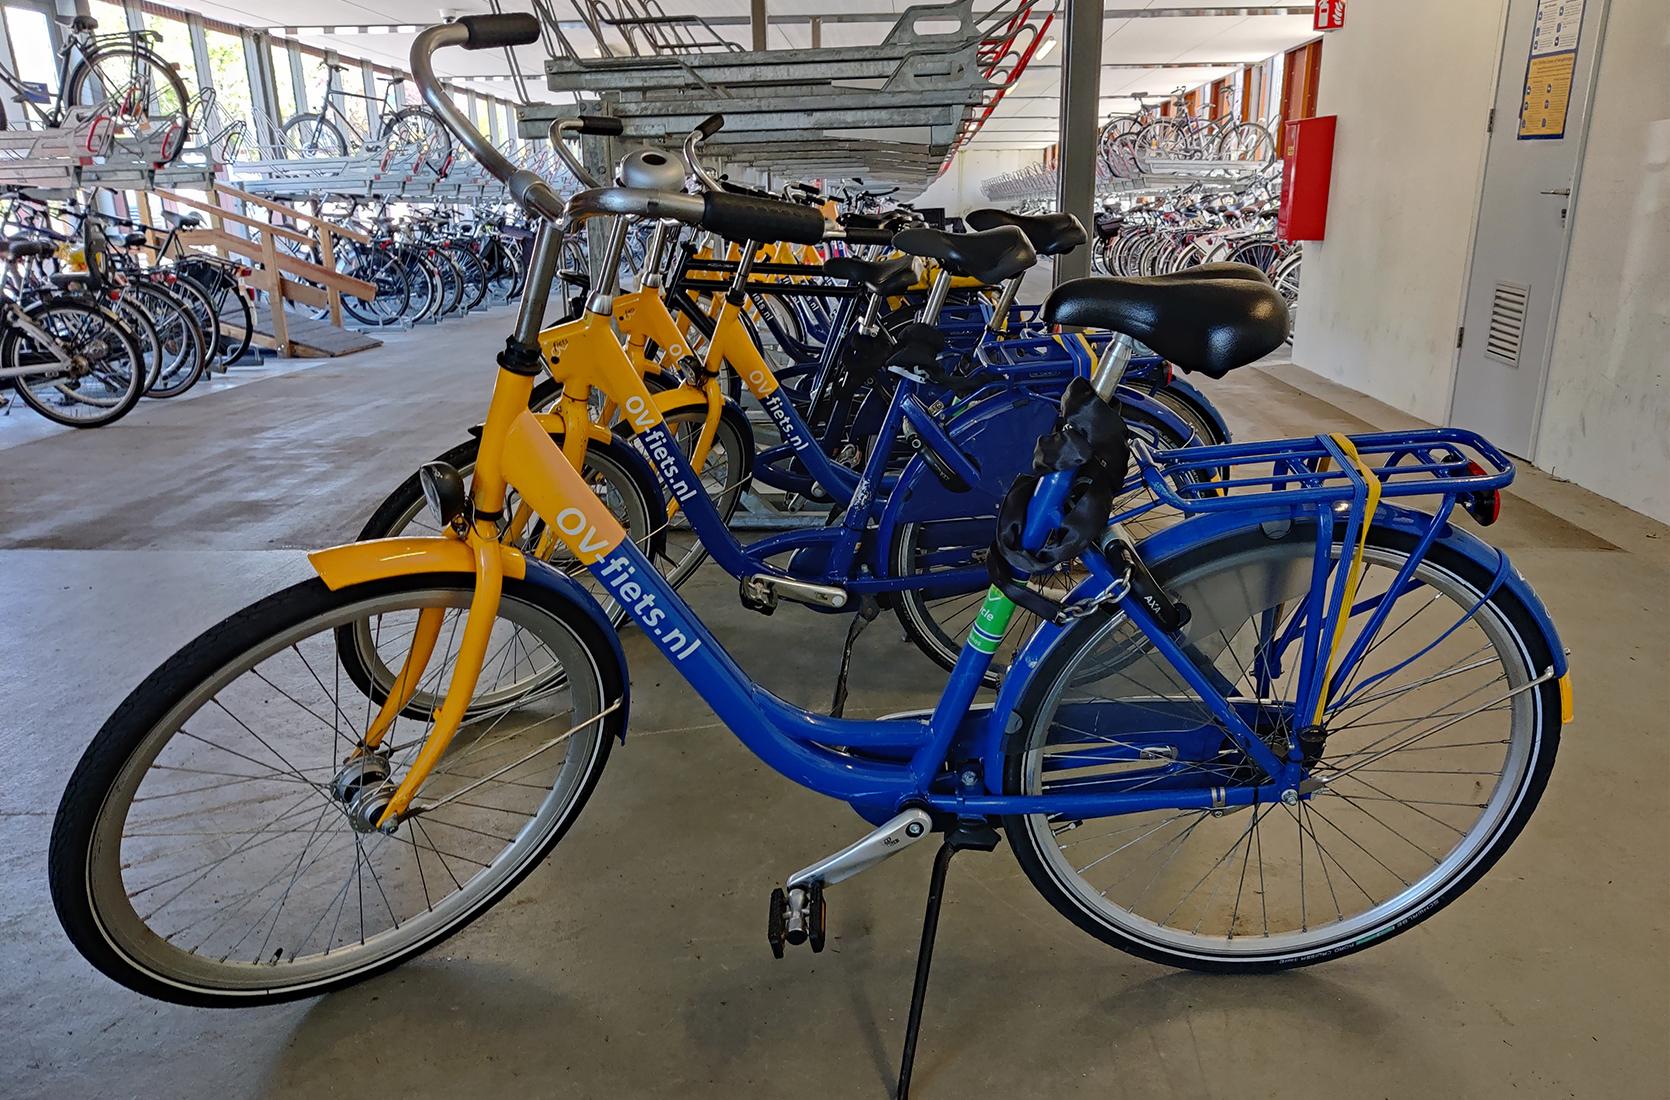 OV-fiets bij NS station Castricum